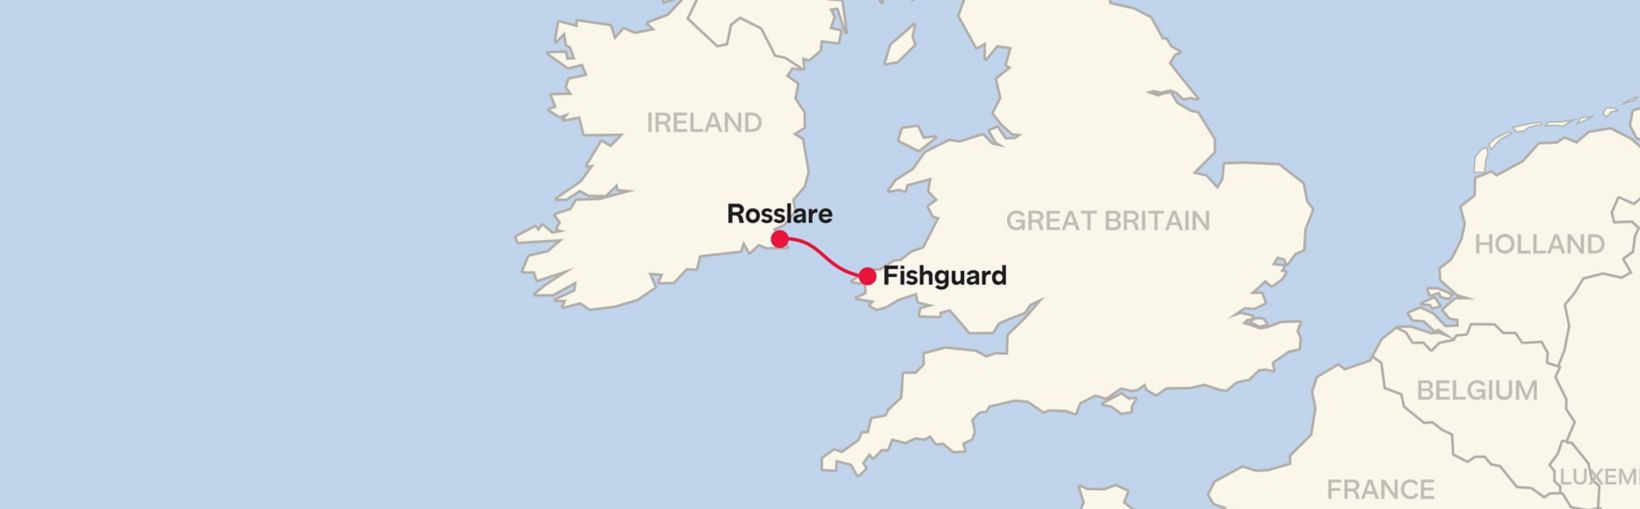 Stena Line Route Map Rosslare - Fishguard